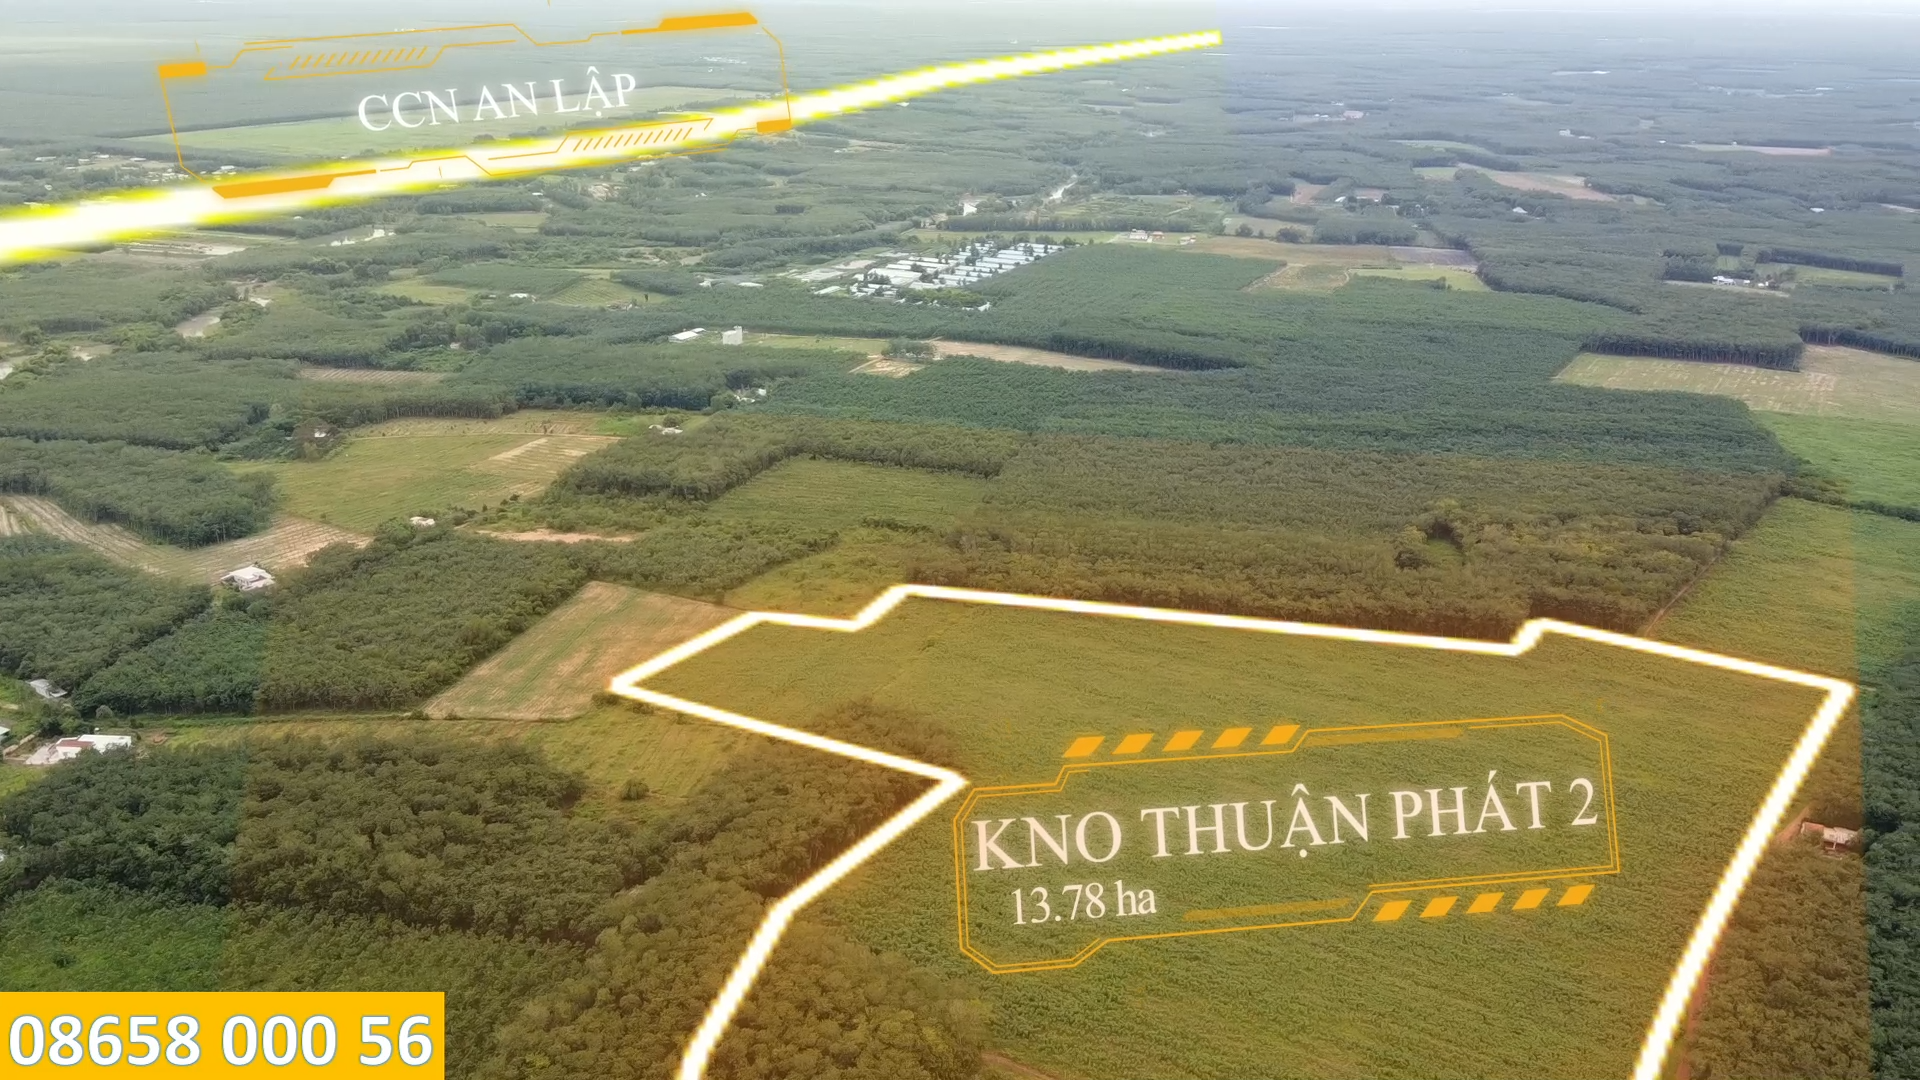 Bán 13,78 HA quy hoạch thành khu nhà ở Thuận Phát 2 Xã Long Nguyên huyện Bàu Bàng tỉnh Bình Dương 2